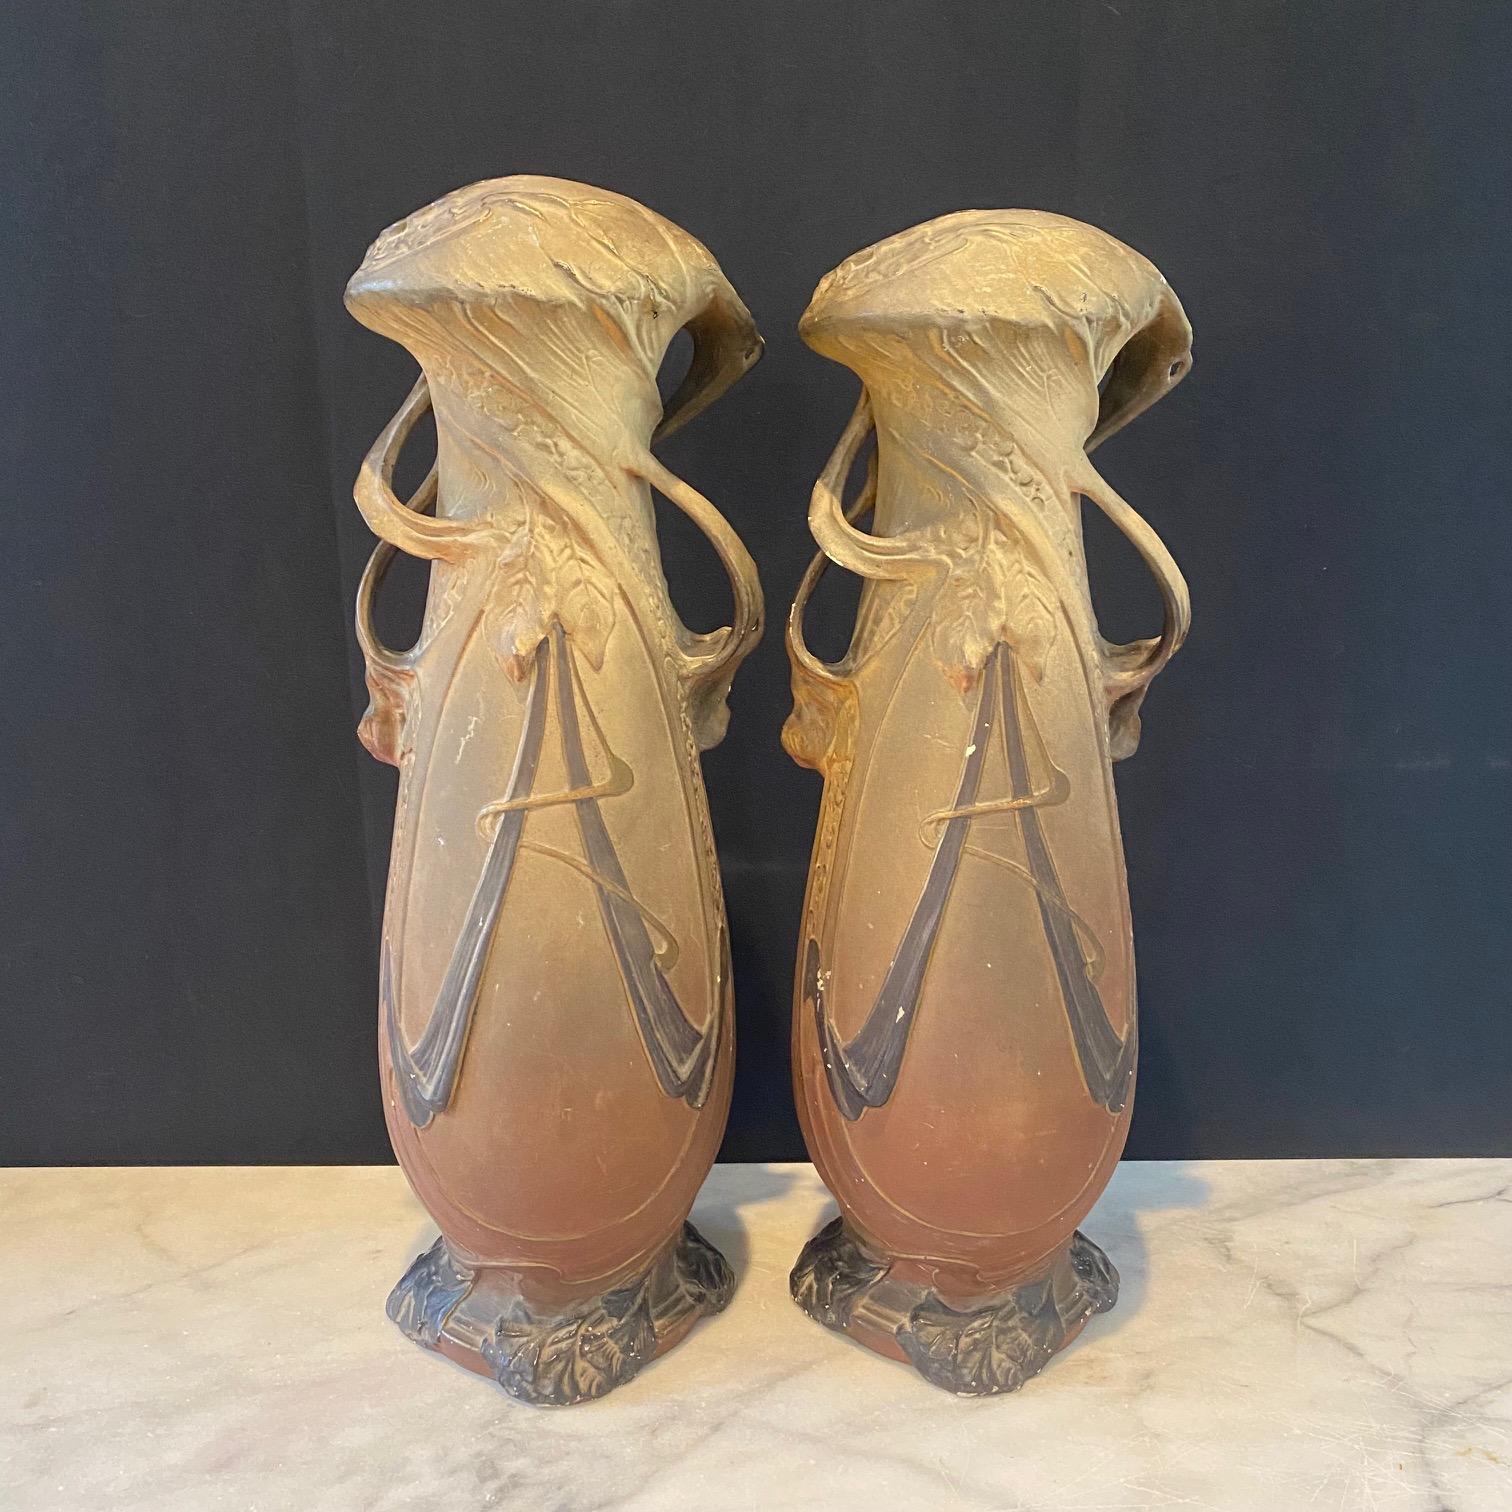 Très belle paire de vases en porcelaine dans le style Royal Dux Bohemia Art Nouveau, 19ème siècle. En très bon état - œuvres d'art achetées dans le sud de la France. Magnifiques intérieurs bleu clair.
Diamètre du fond 7